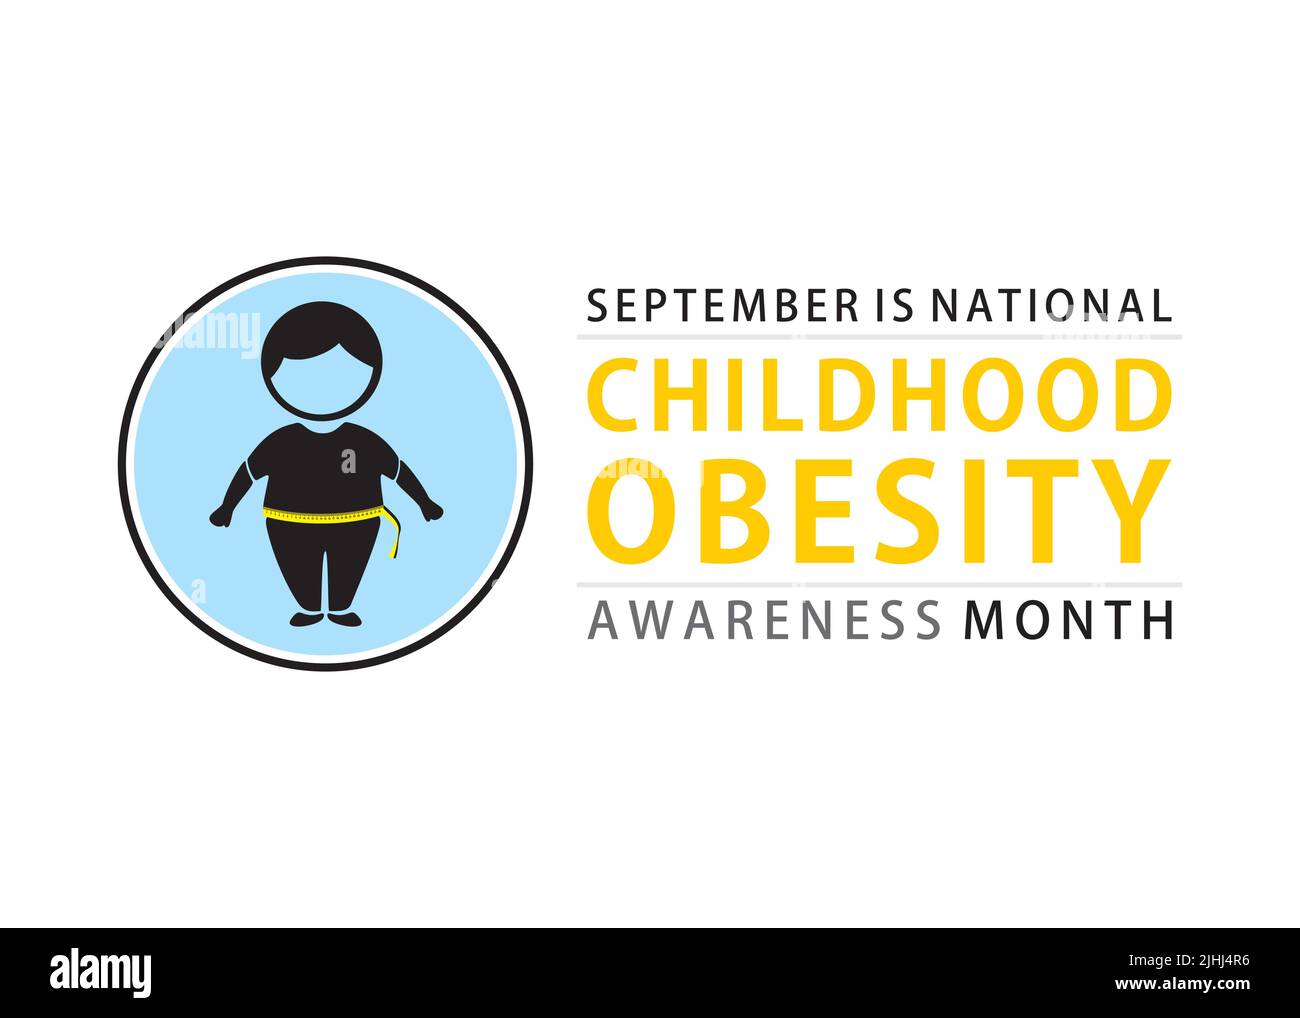 Septembre est la conception d'affiches du mois national de sensibilisation à l'obésité chez les enfants Illustration de Vecteur